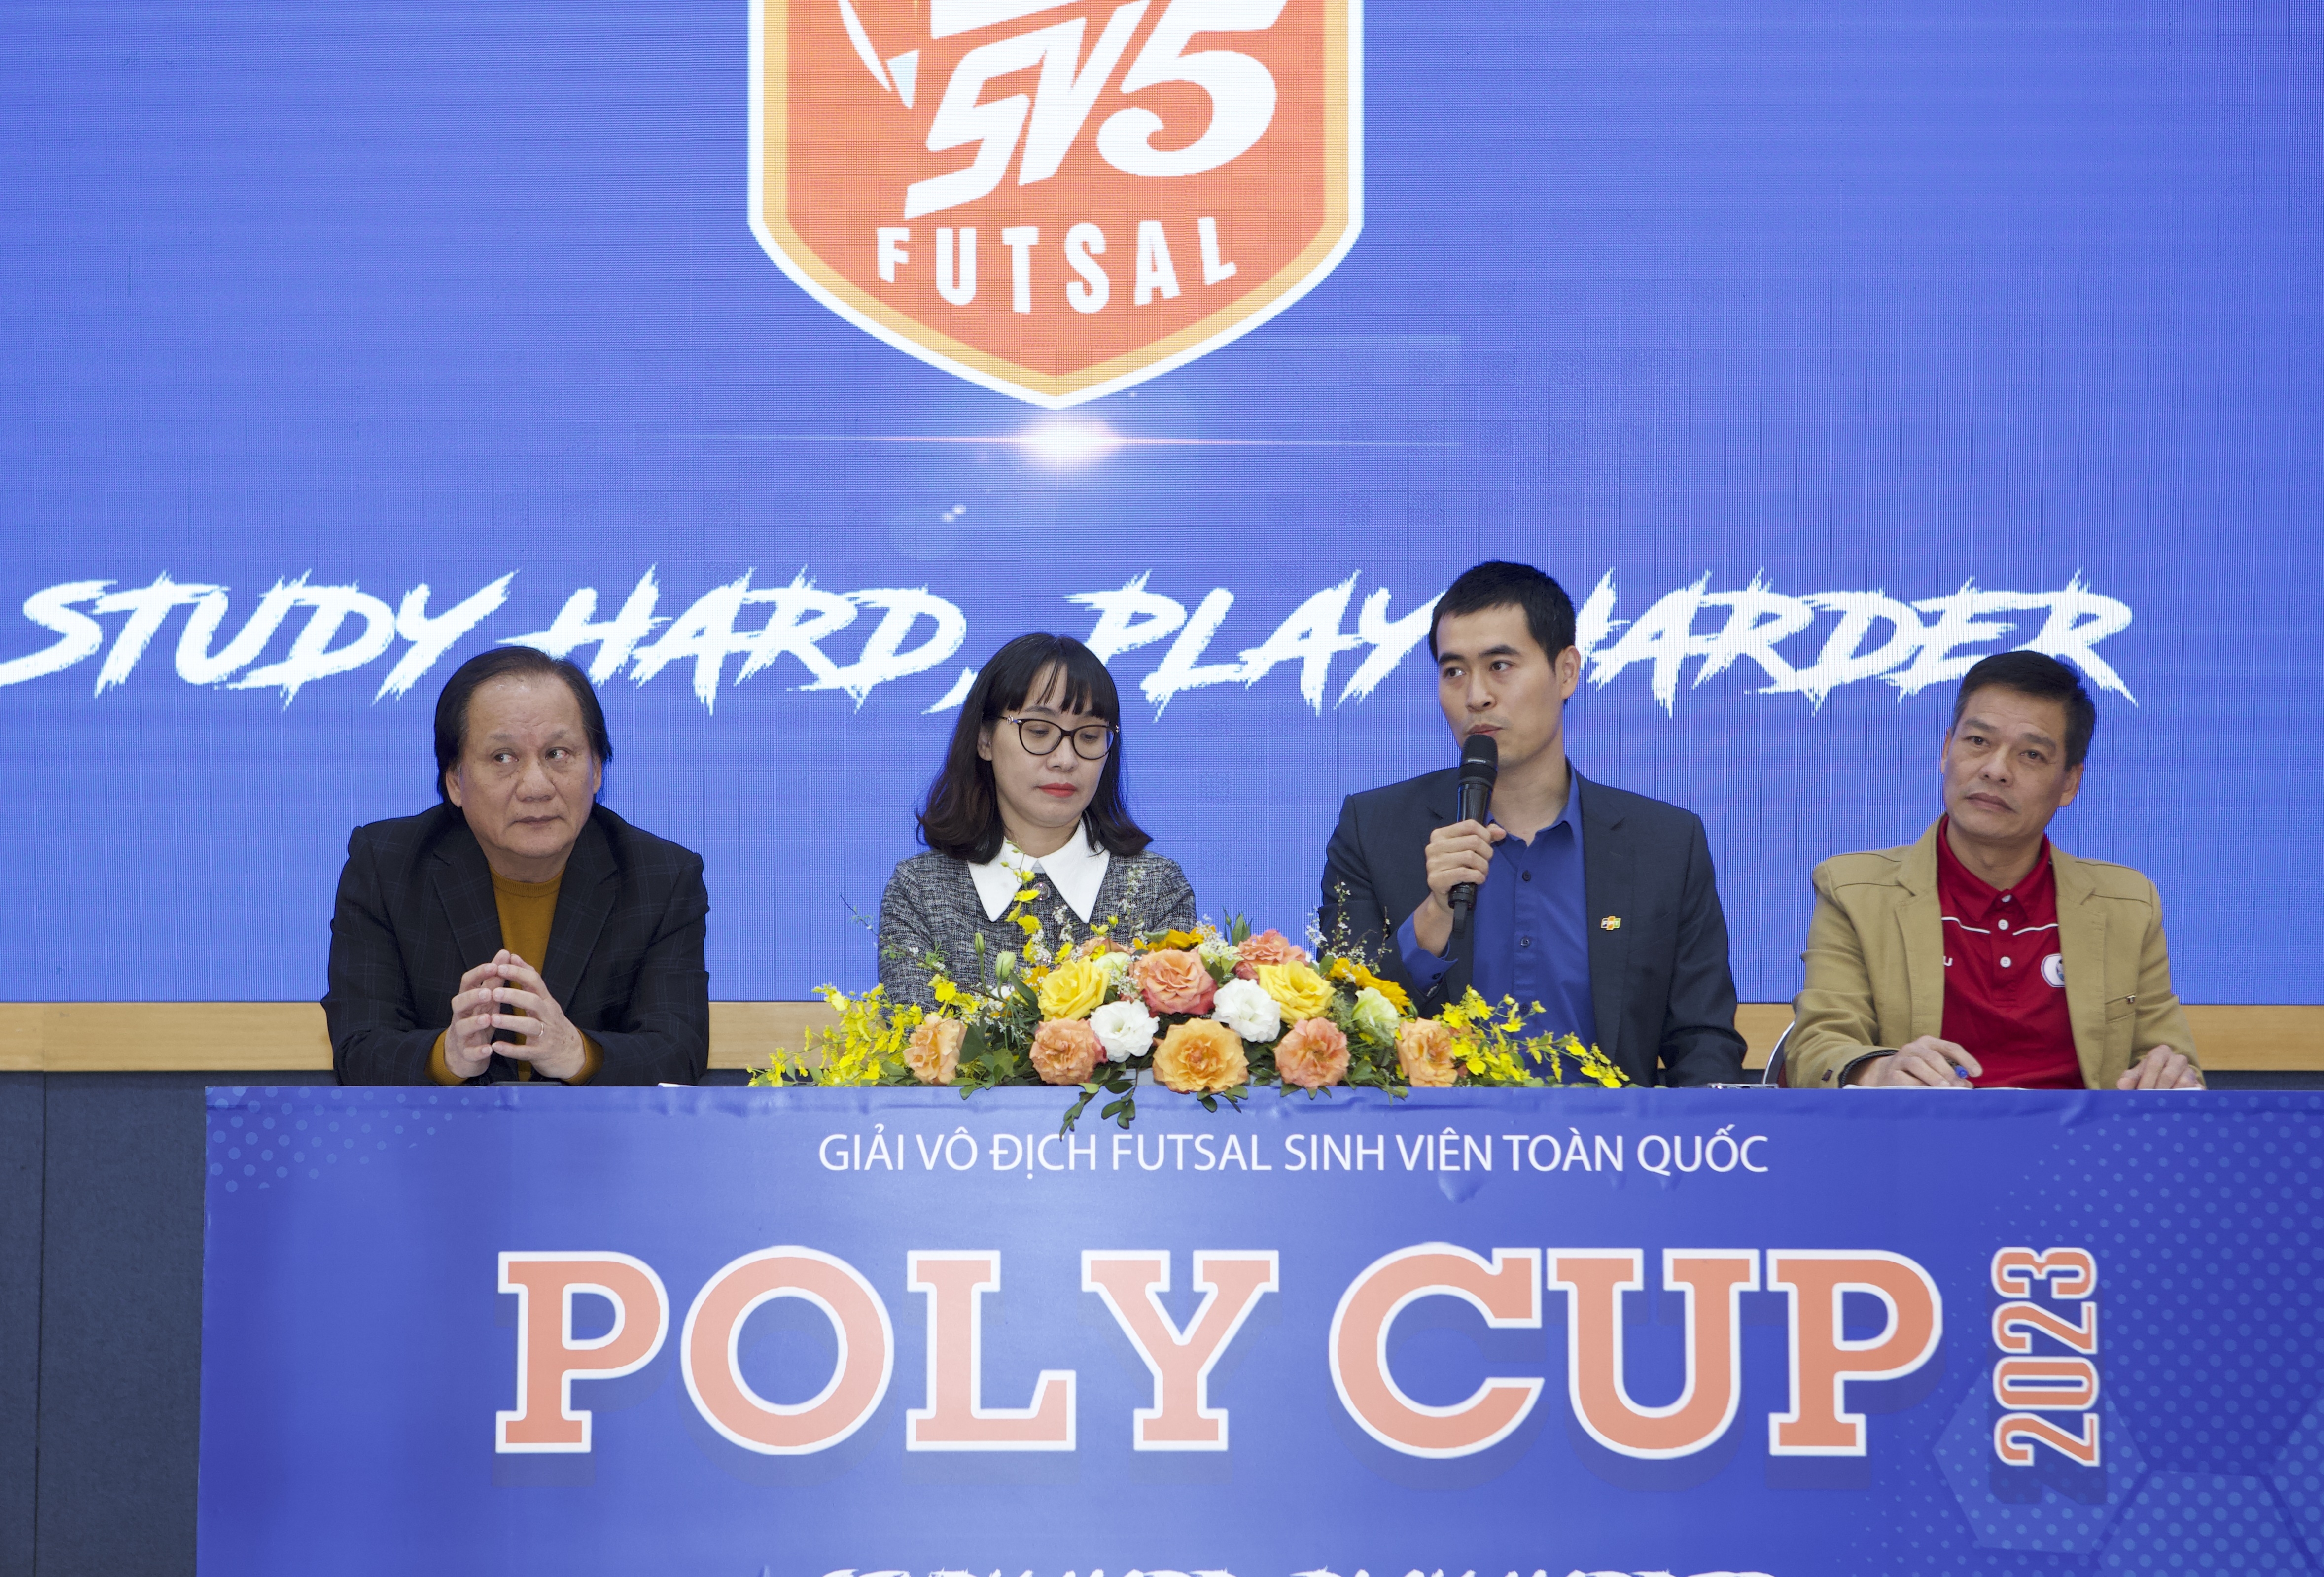 Poly Cup 2023 - Giải Fustal hấp dẫn dành cho sinh viên cả nước